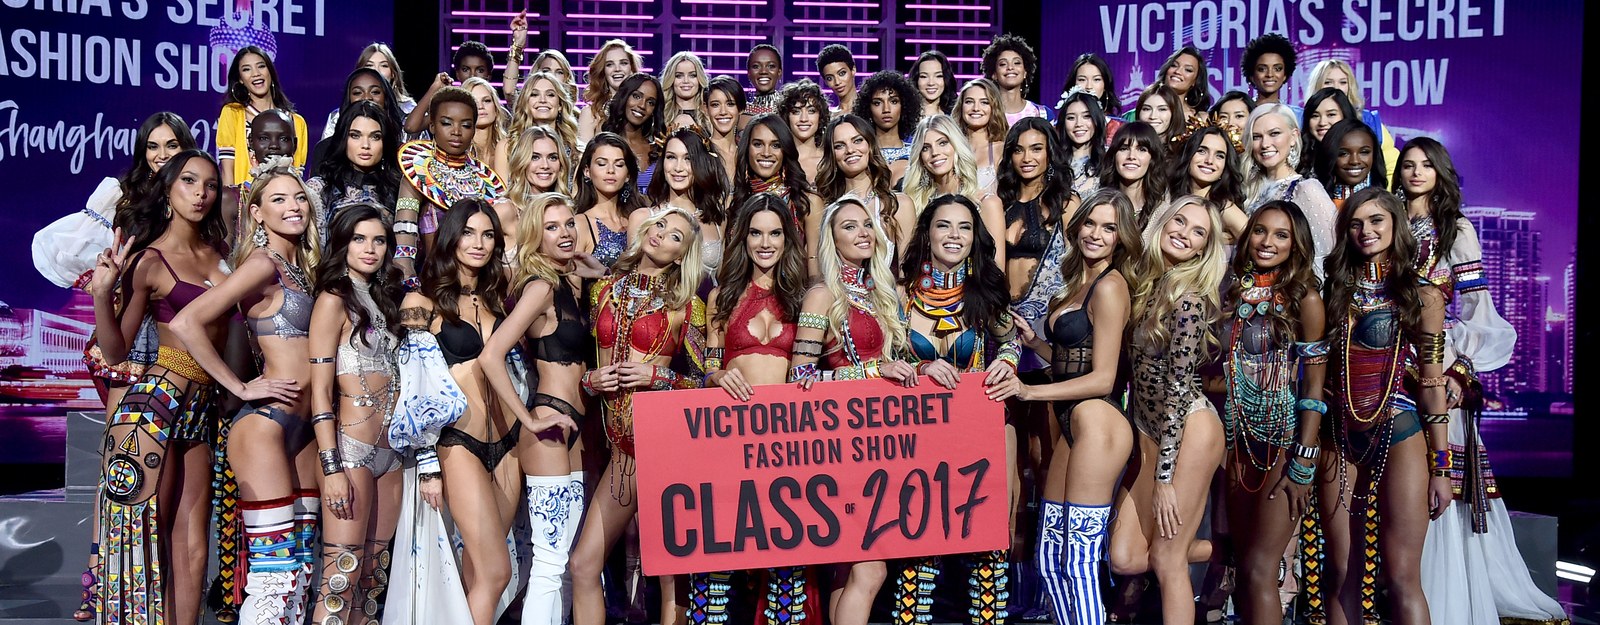 Victoria's Secret Fashion Show : Après de nombreux couacs, les policiers mettent fin à l'After Party